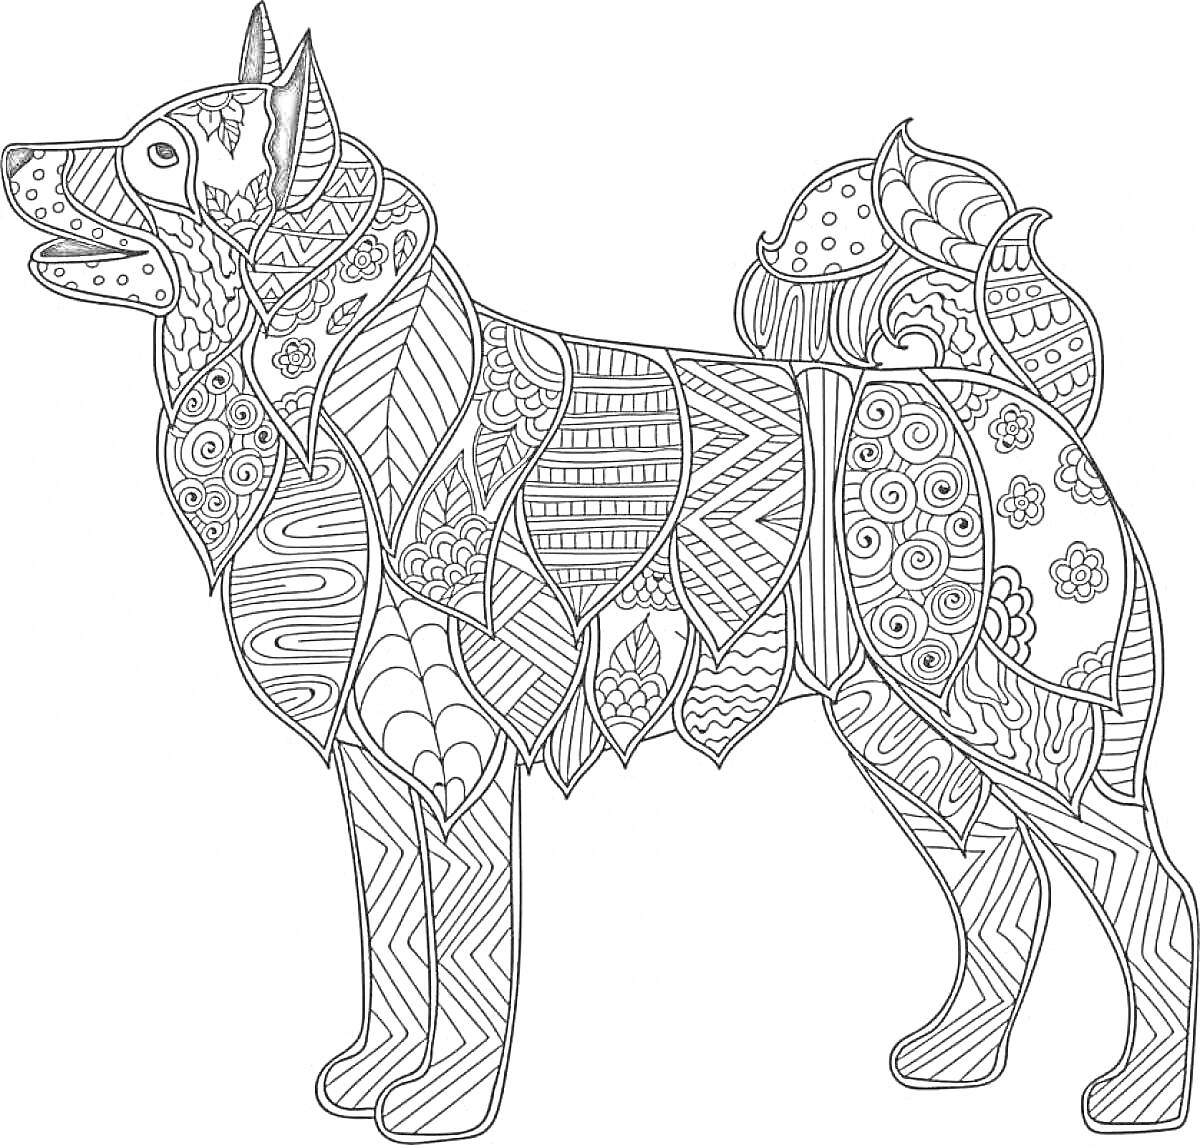 Раскраска Собака в этнических узорах с множеством мелких элементов, включая цветы, линии и геометрические фигуры